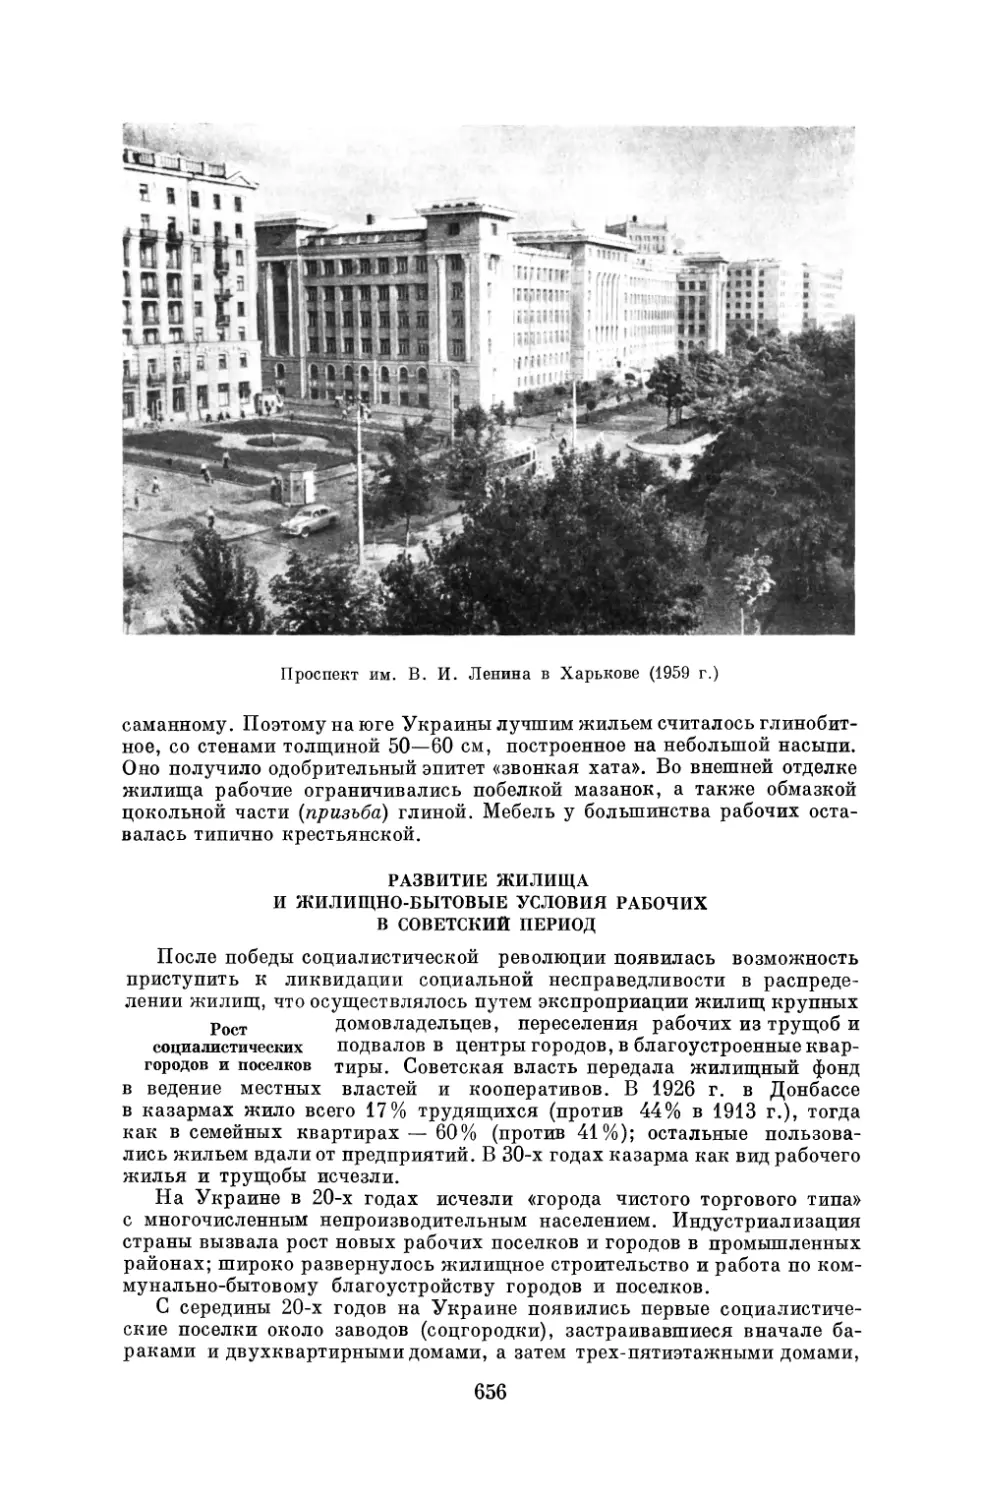 Развитие жилища и жилищно-бытовые условия рабочих в советский период